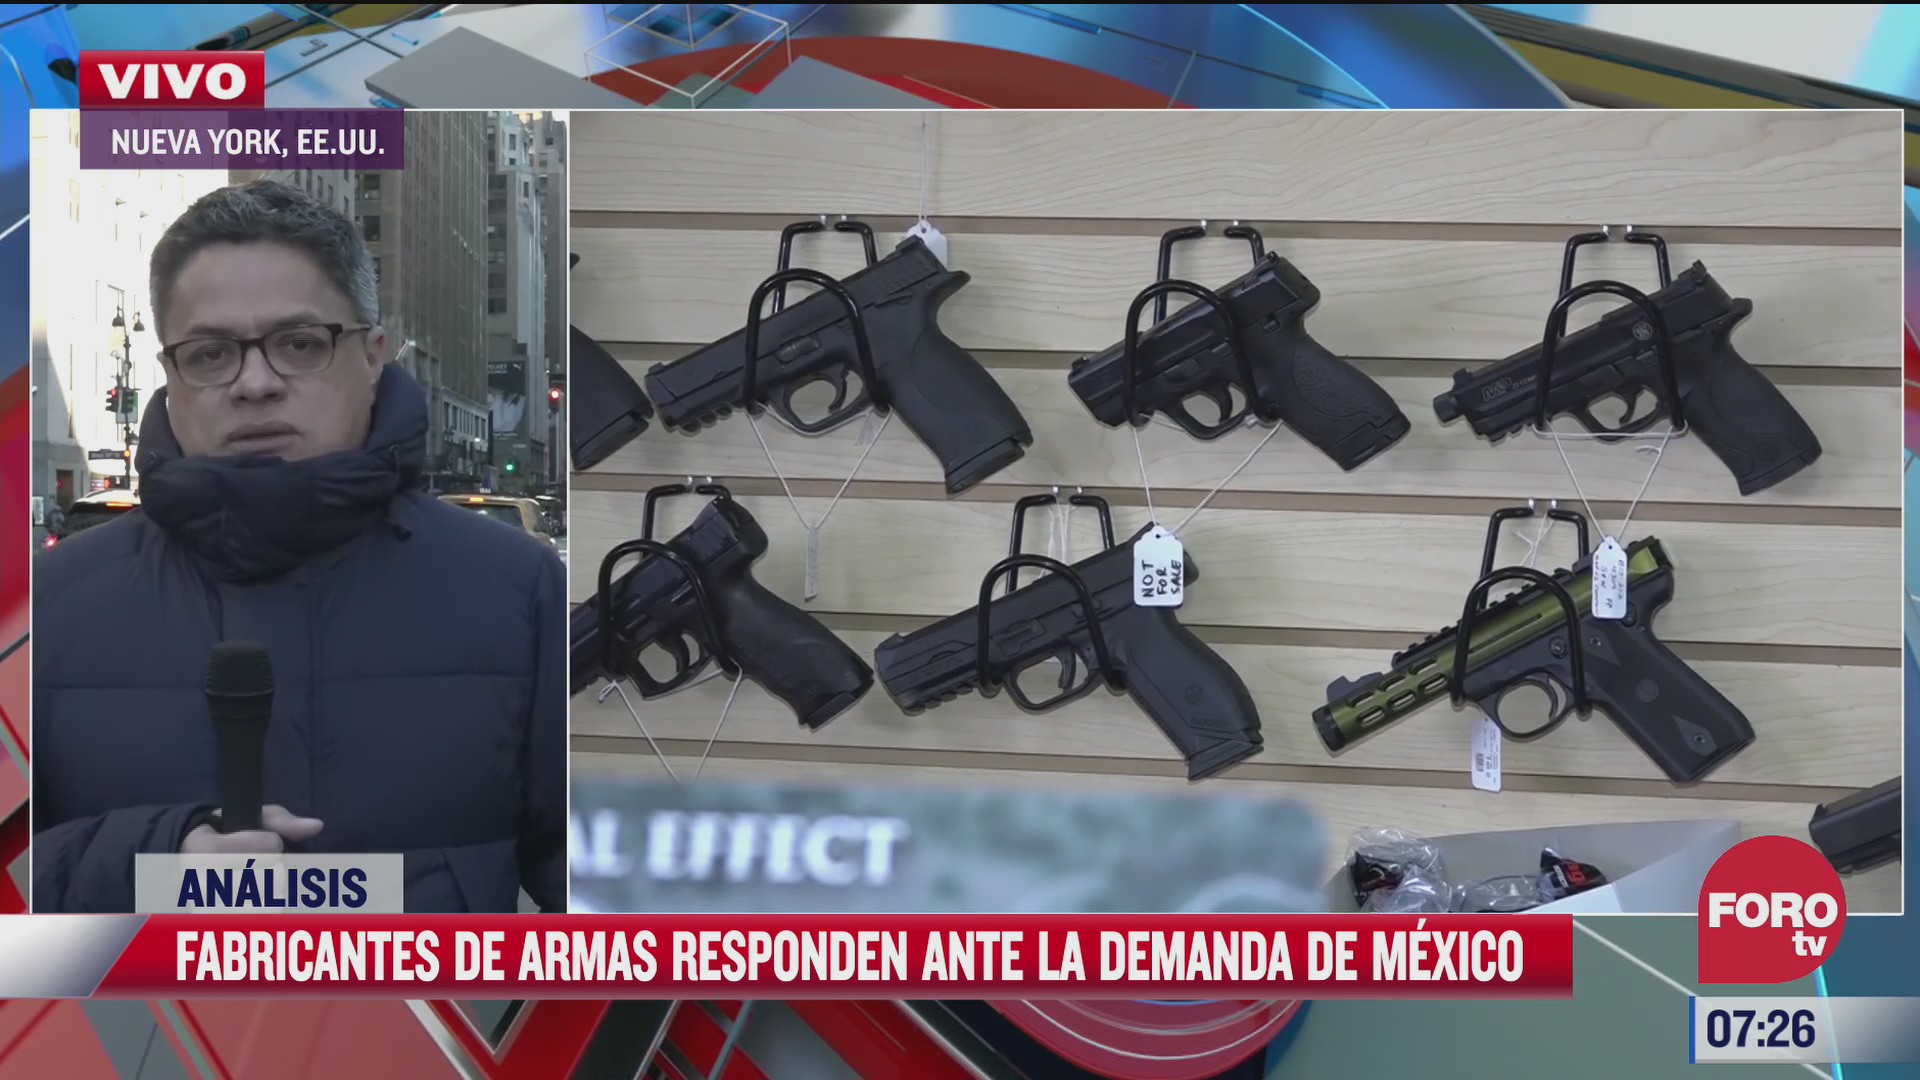 mexico plantea debate sobre trafico de armas en la onu el analisis en estrictamente personal